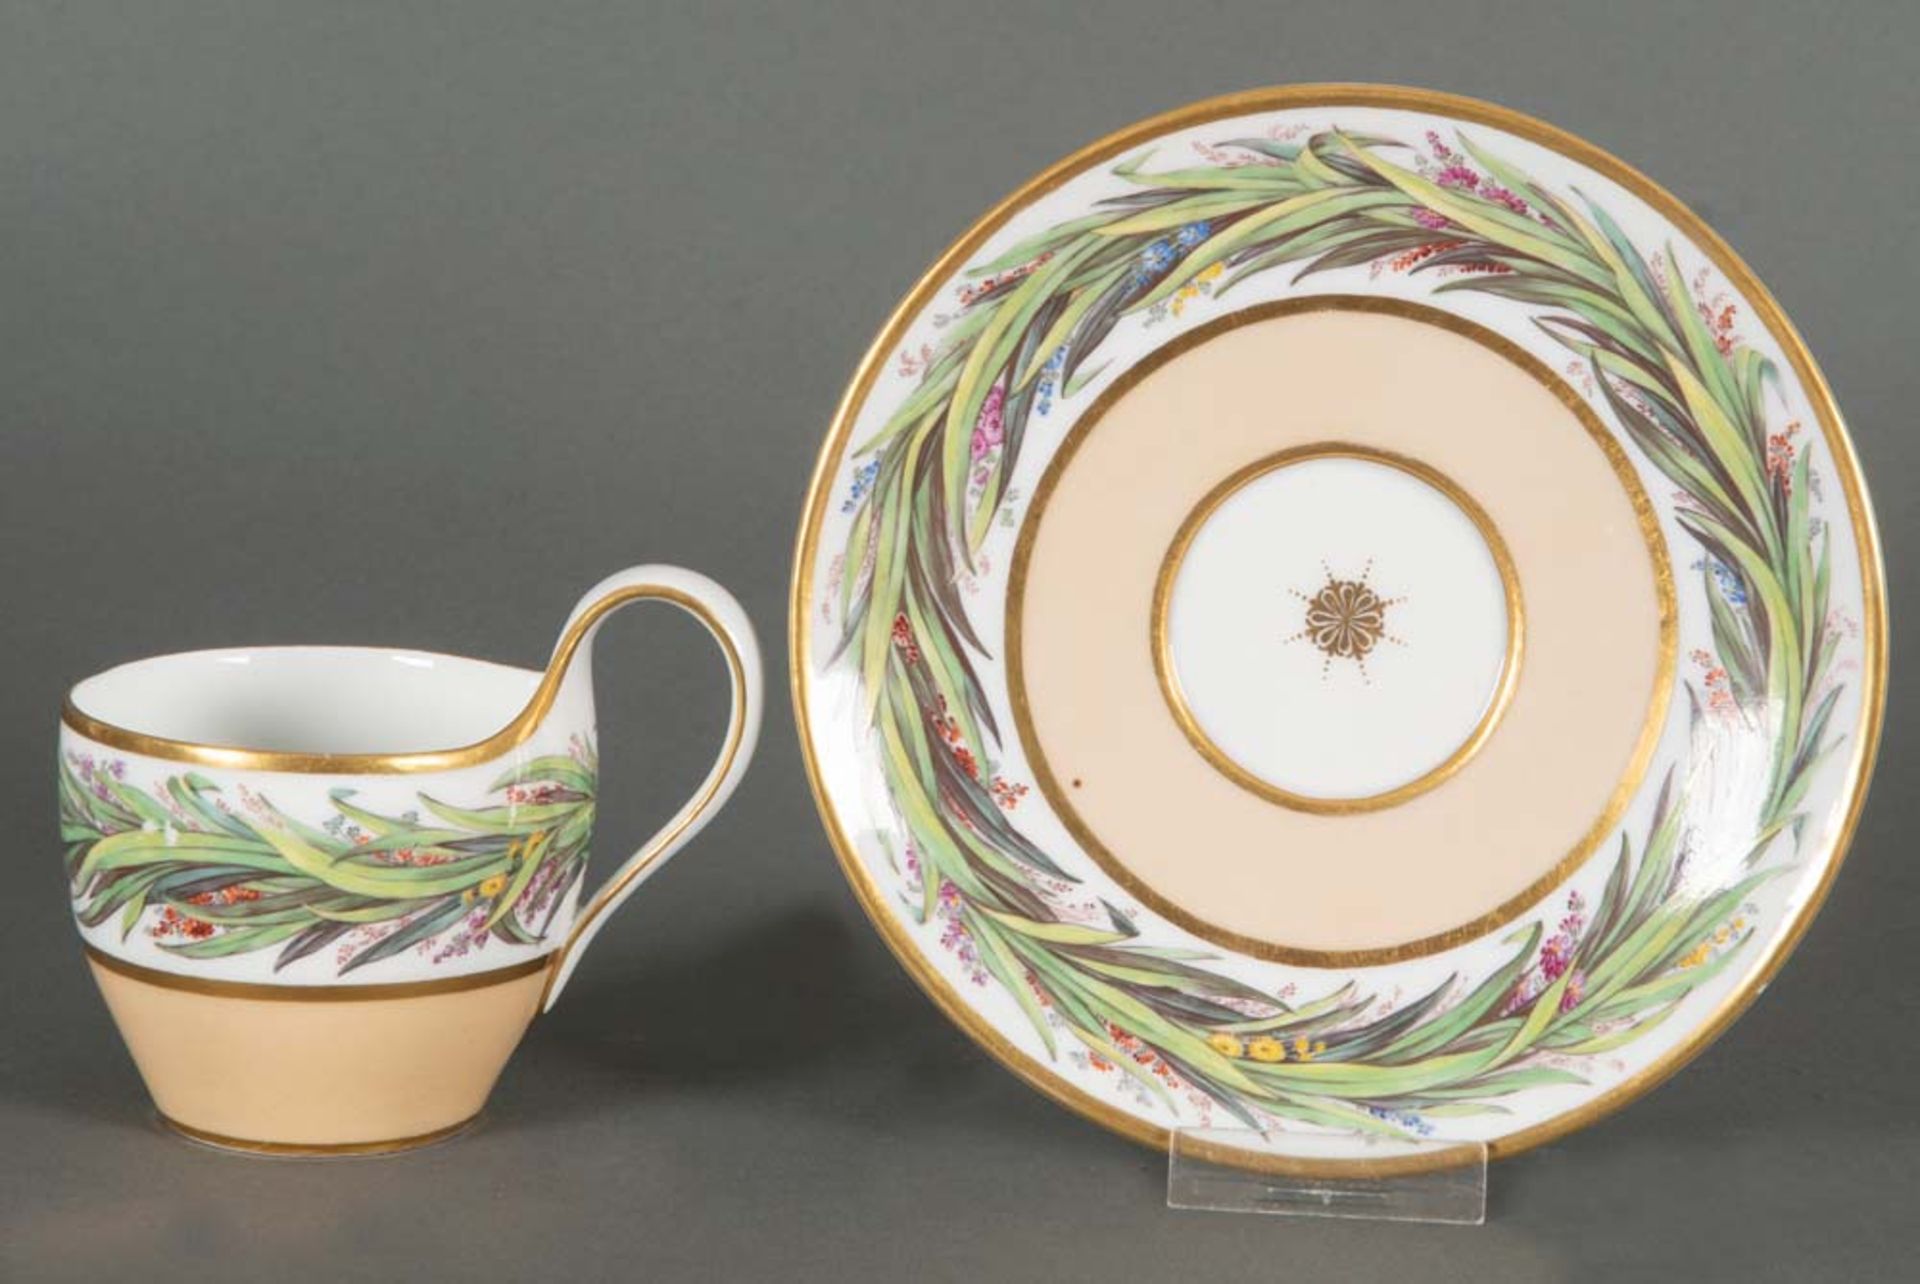 Tasse mit Unterschale Campaner Form. Berlin um 1800. Porzellan, bunt bemalt mit Blattdekor, Gold